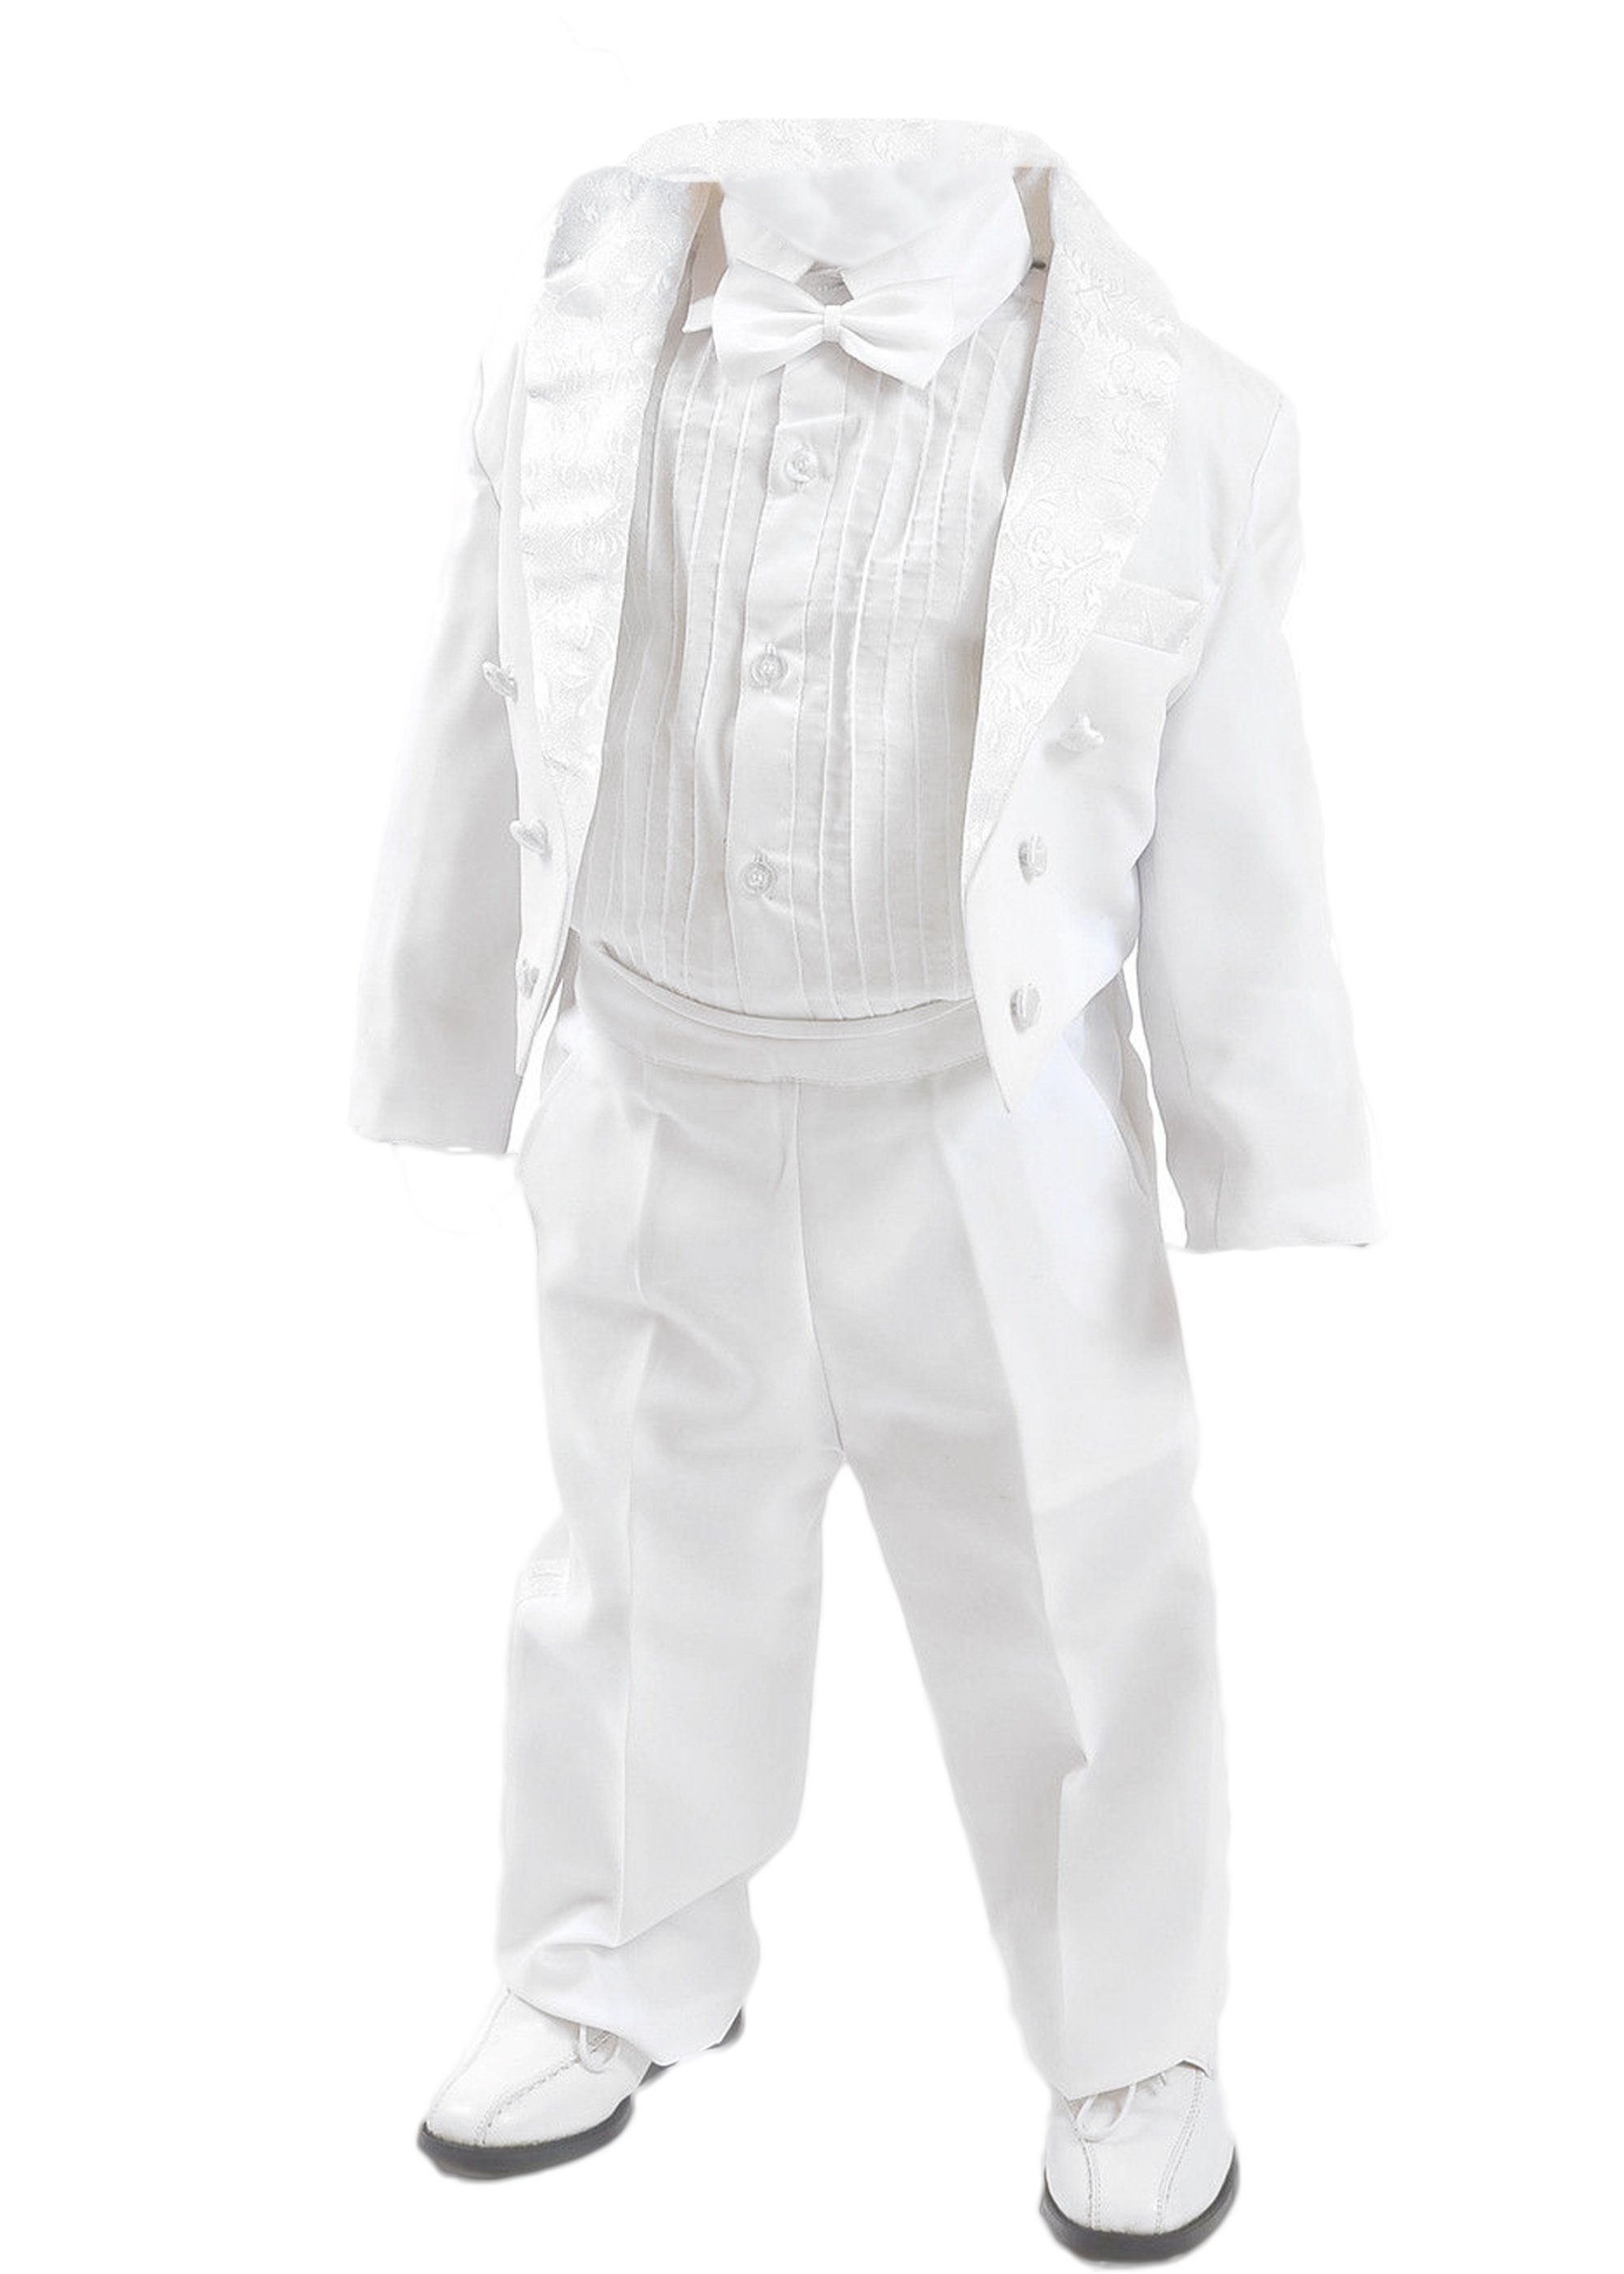 Family Trends Anzug im Look 5-teiligen Set im eleganten weiß